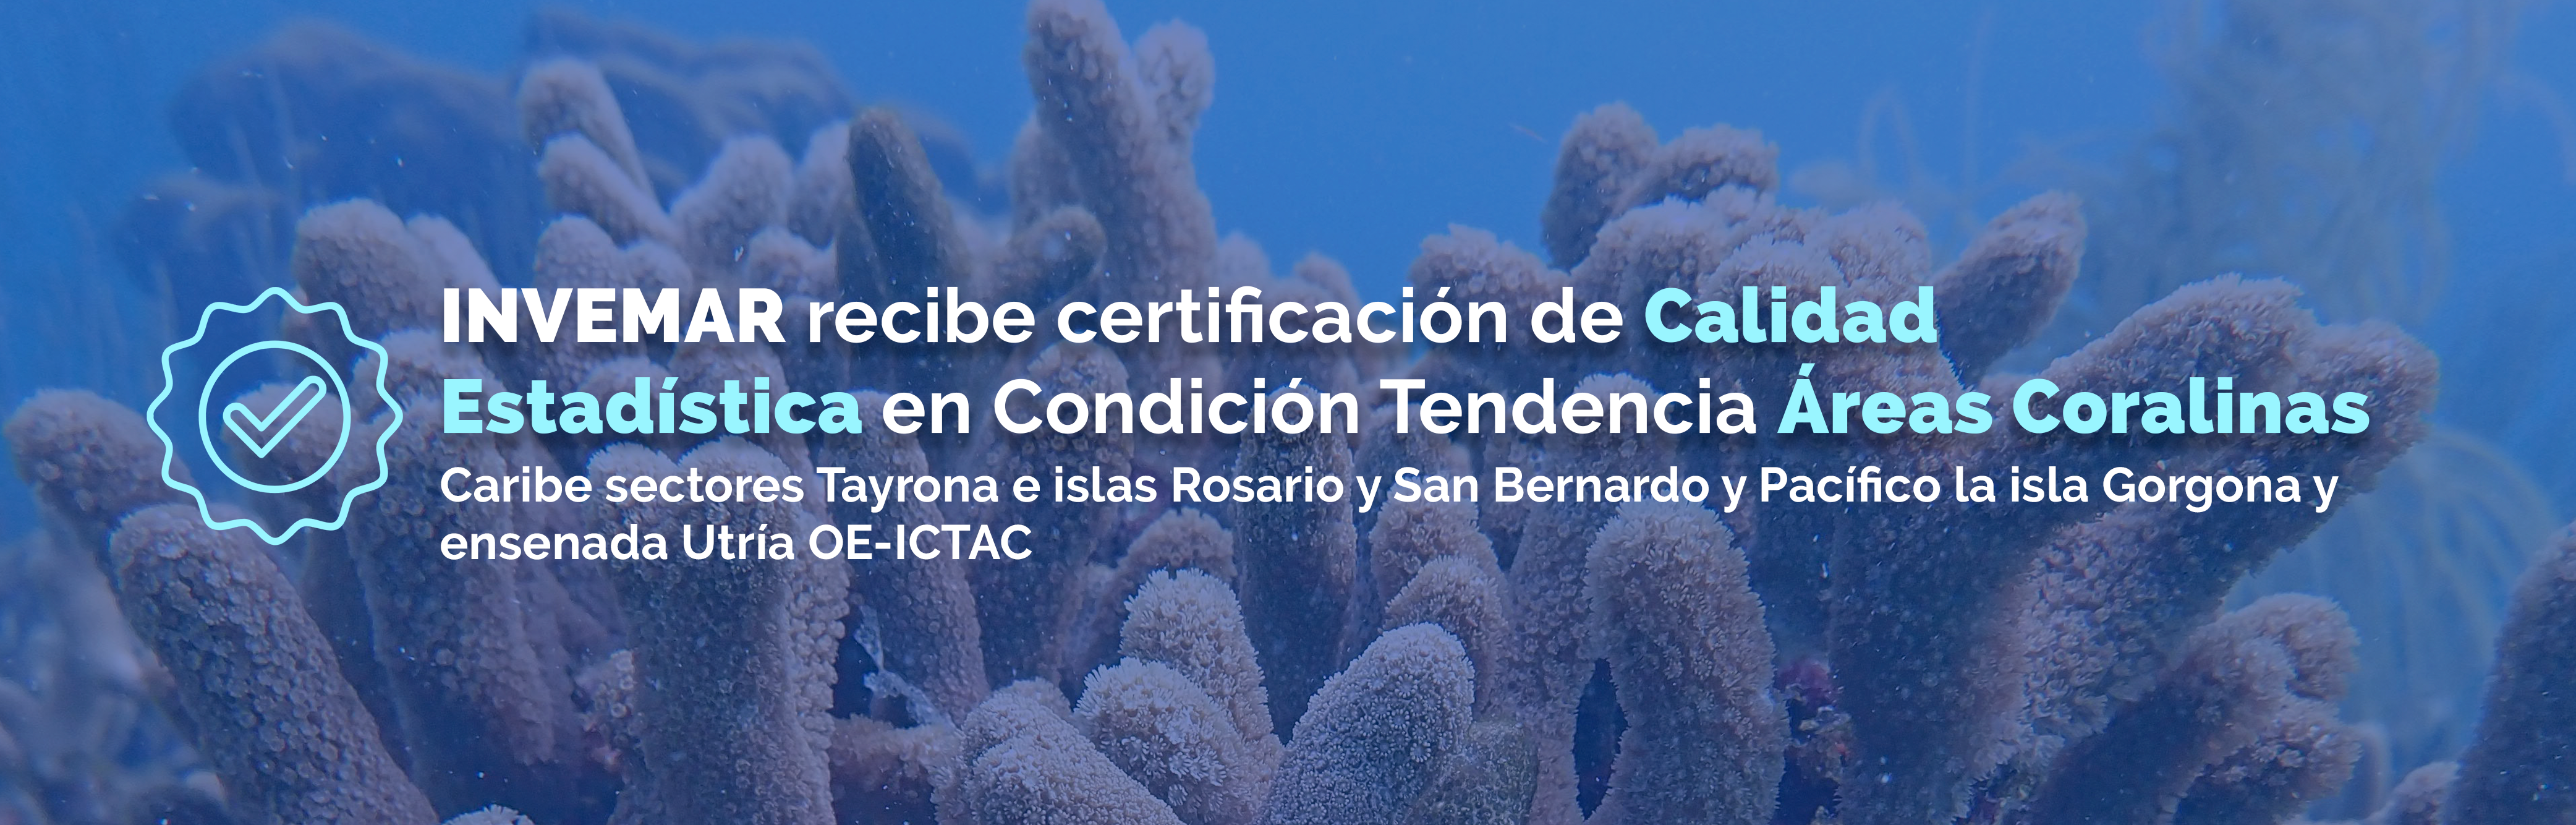 INVEMAR recibe certificación de Calidad Estadística en Condición Tendencia Áreas Coralinas